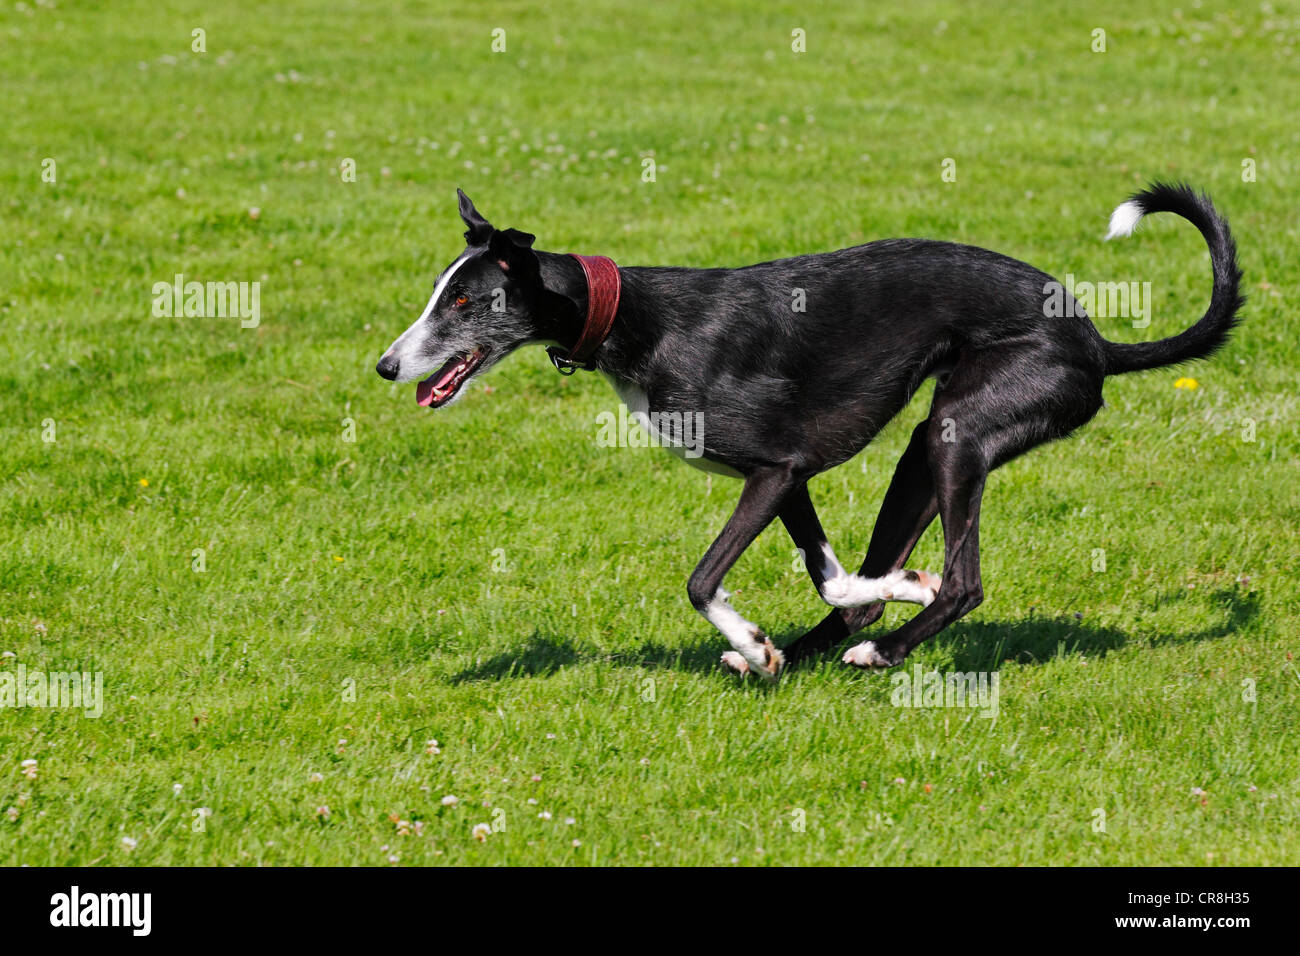 Galgo Espanol, Galgo espagnol, Greyhound espagnol (Canis lupus familiaris) s'exécutant sur une course poursuite Banque D'Images